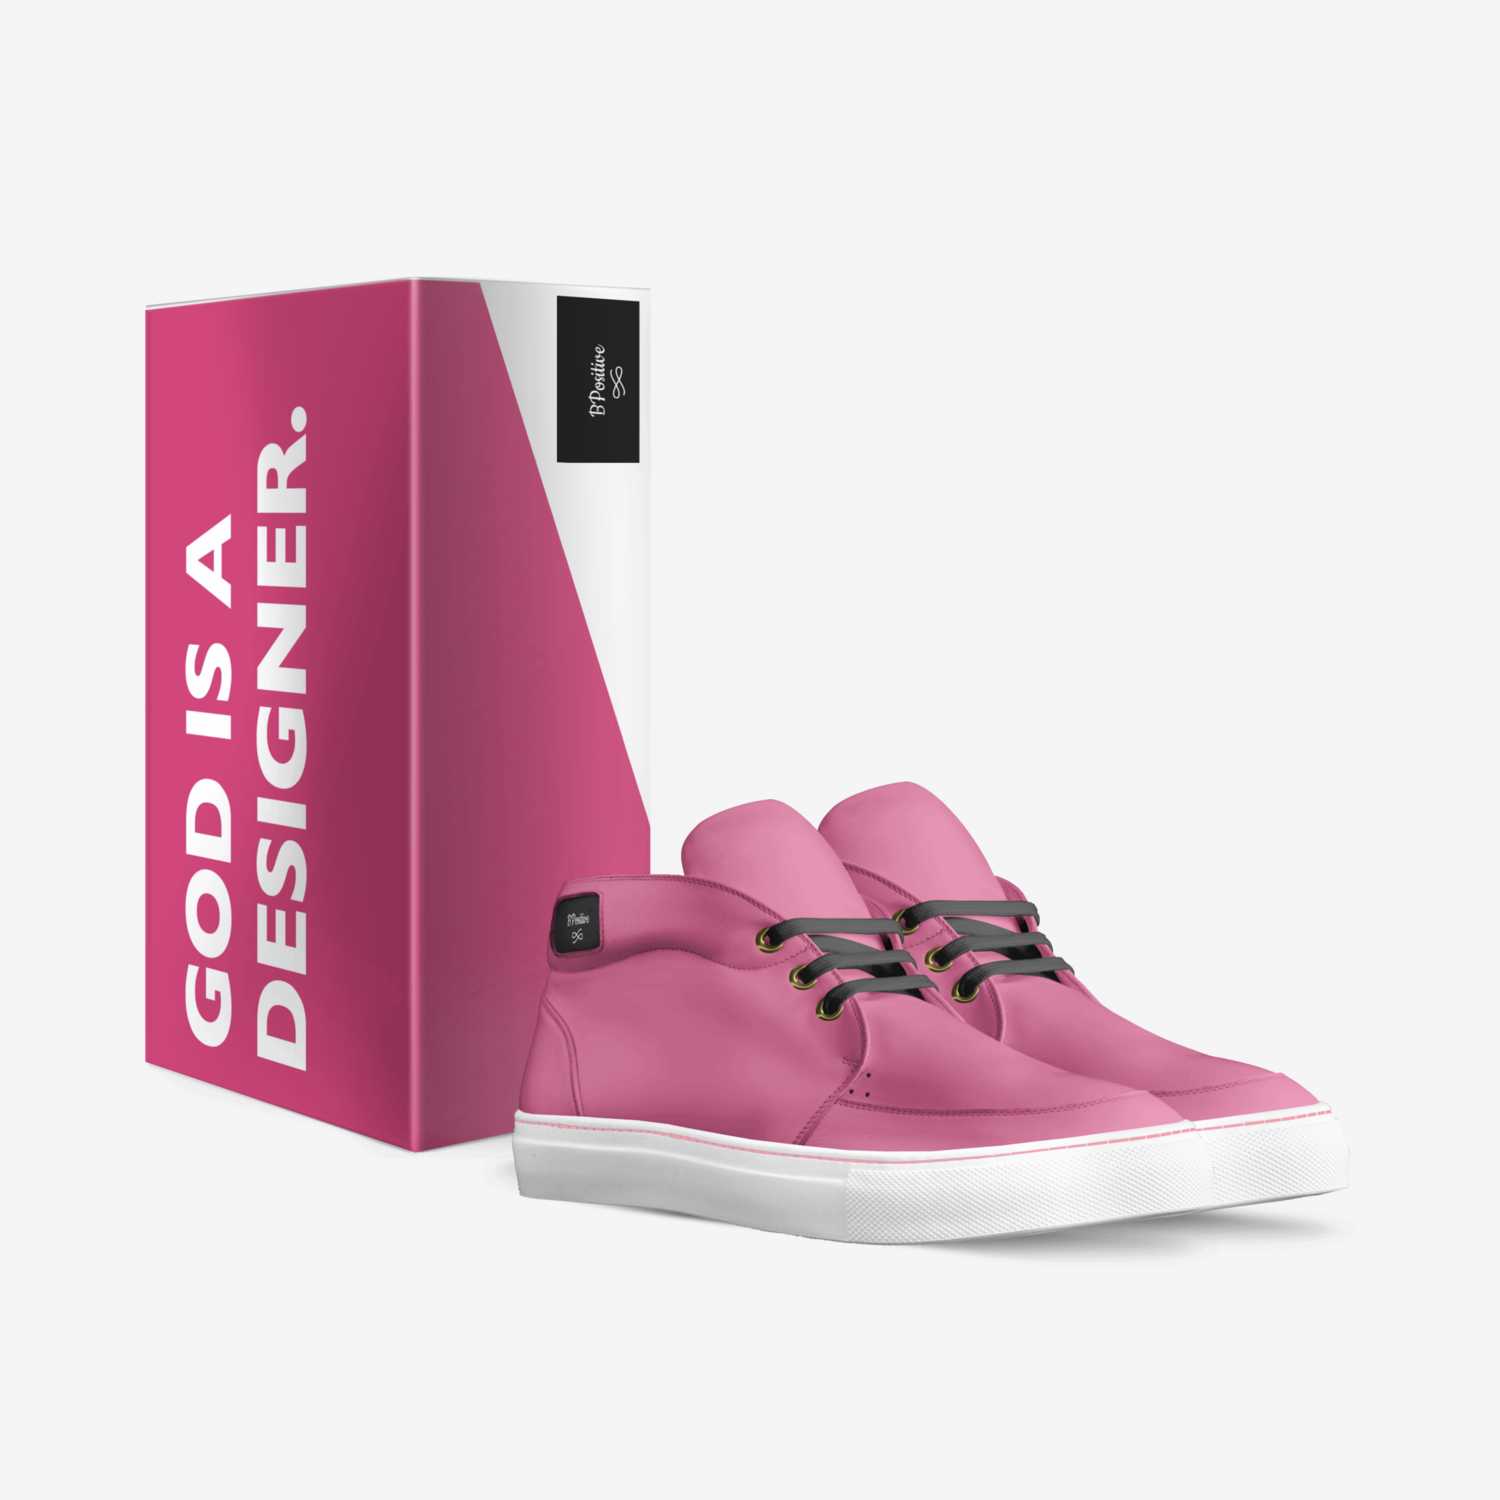 BPositive custom made in Italy shoes by Sylvia Samba | Box view